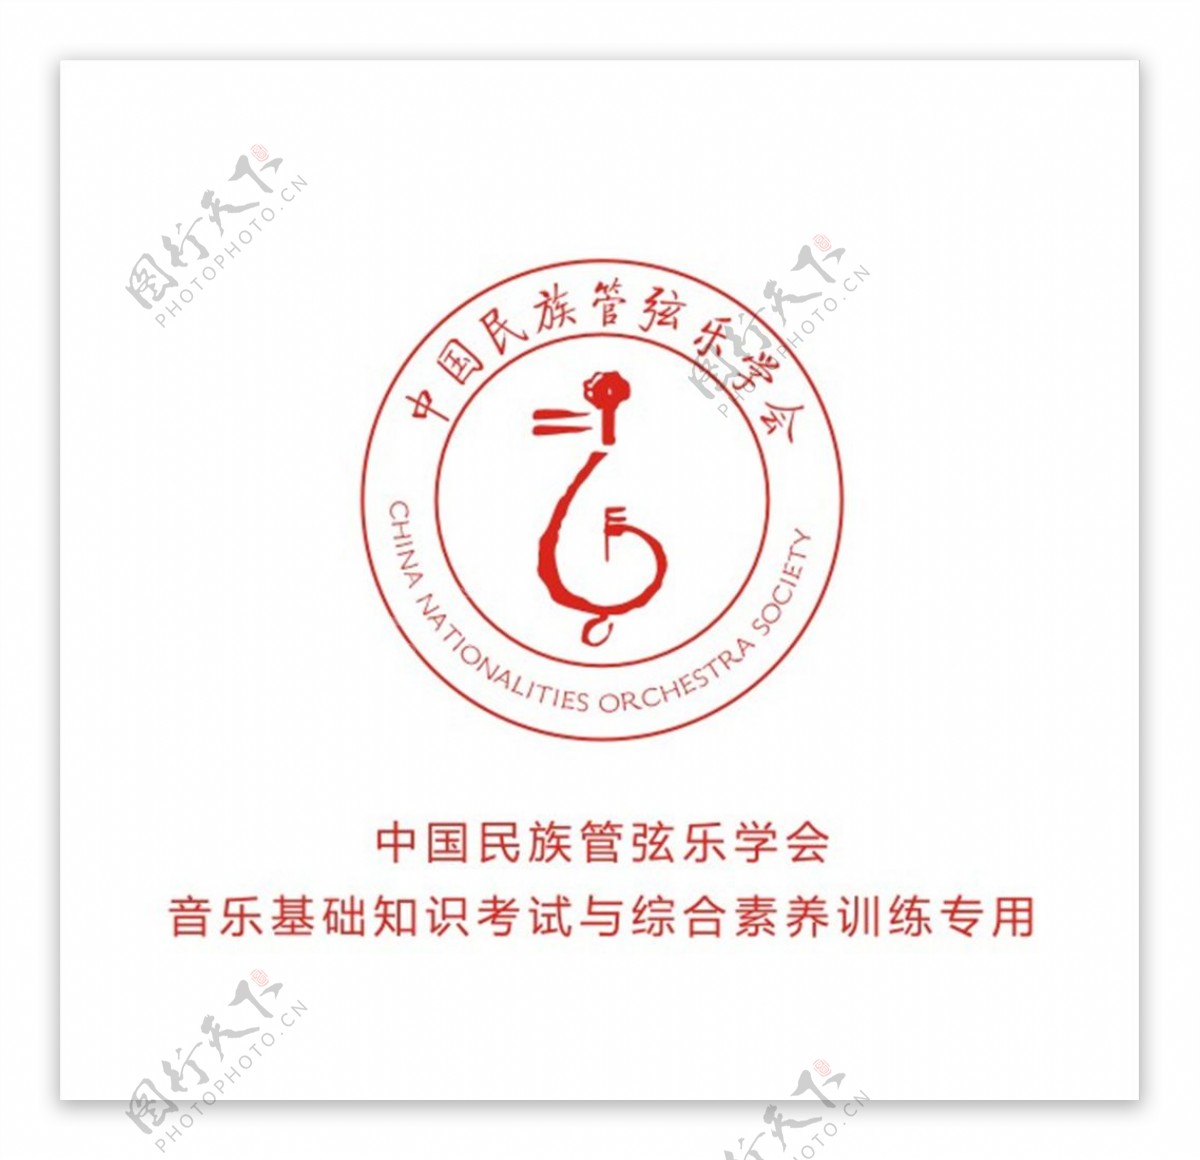 中国民族管弦乐学会logo